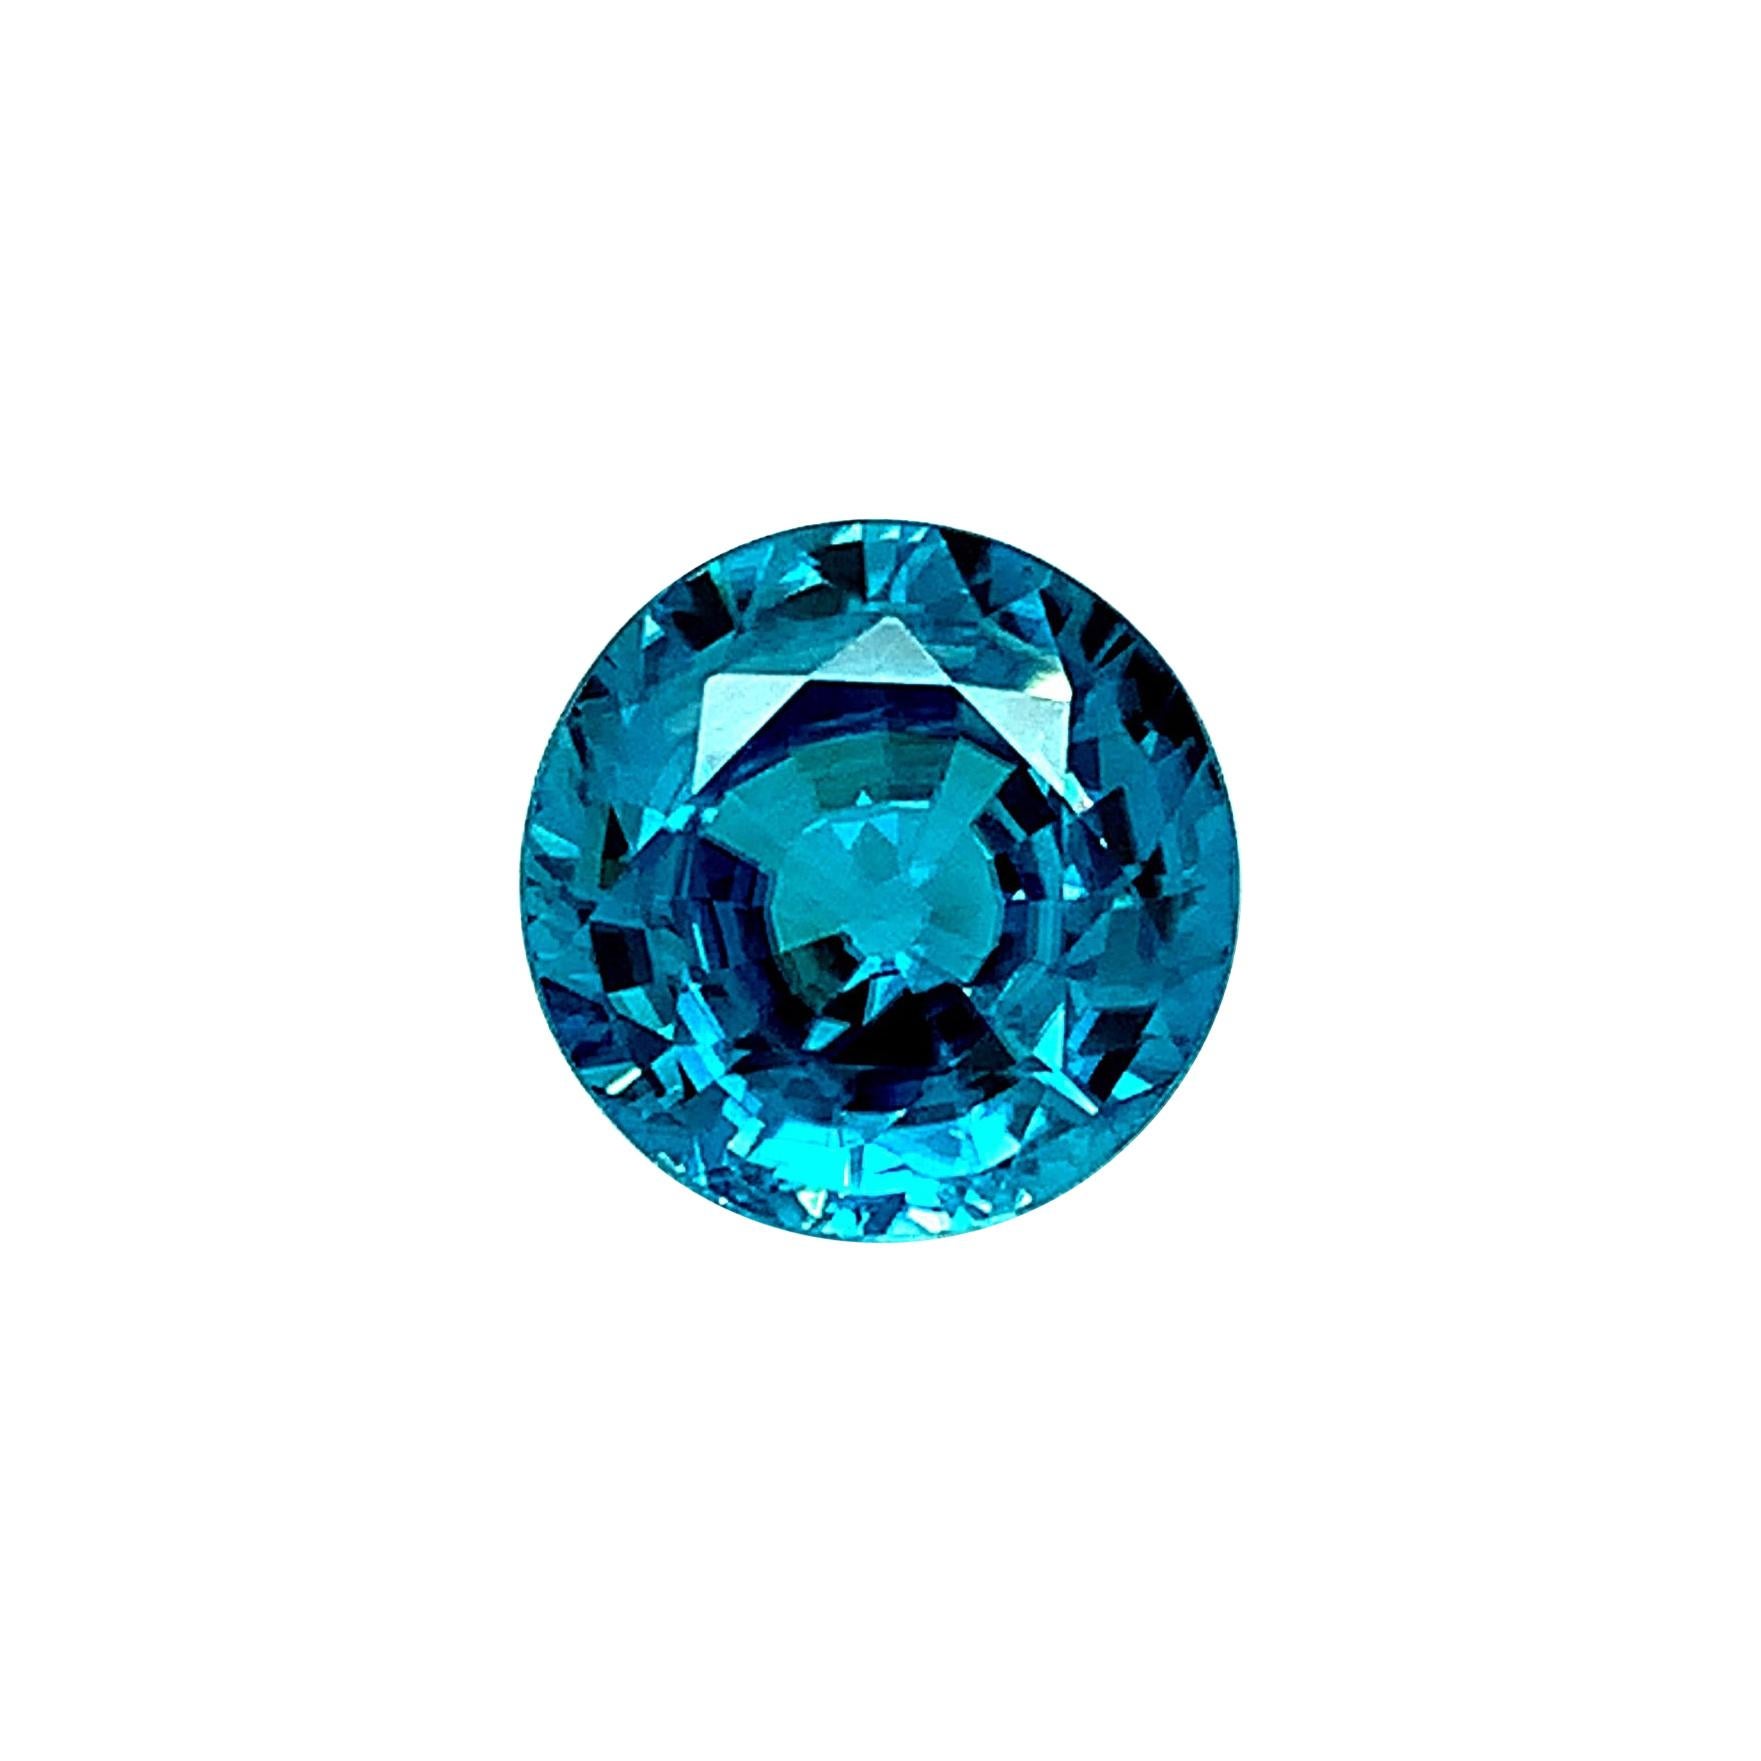 10.18 Carat Round Blue Zircon, Unset Loose Gemstone  